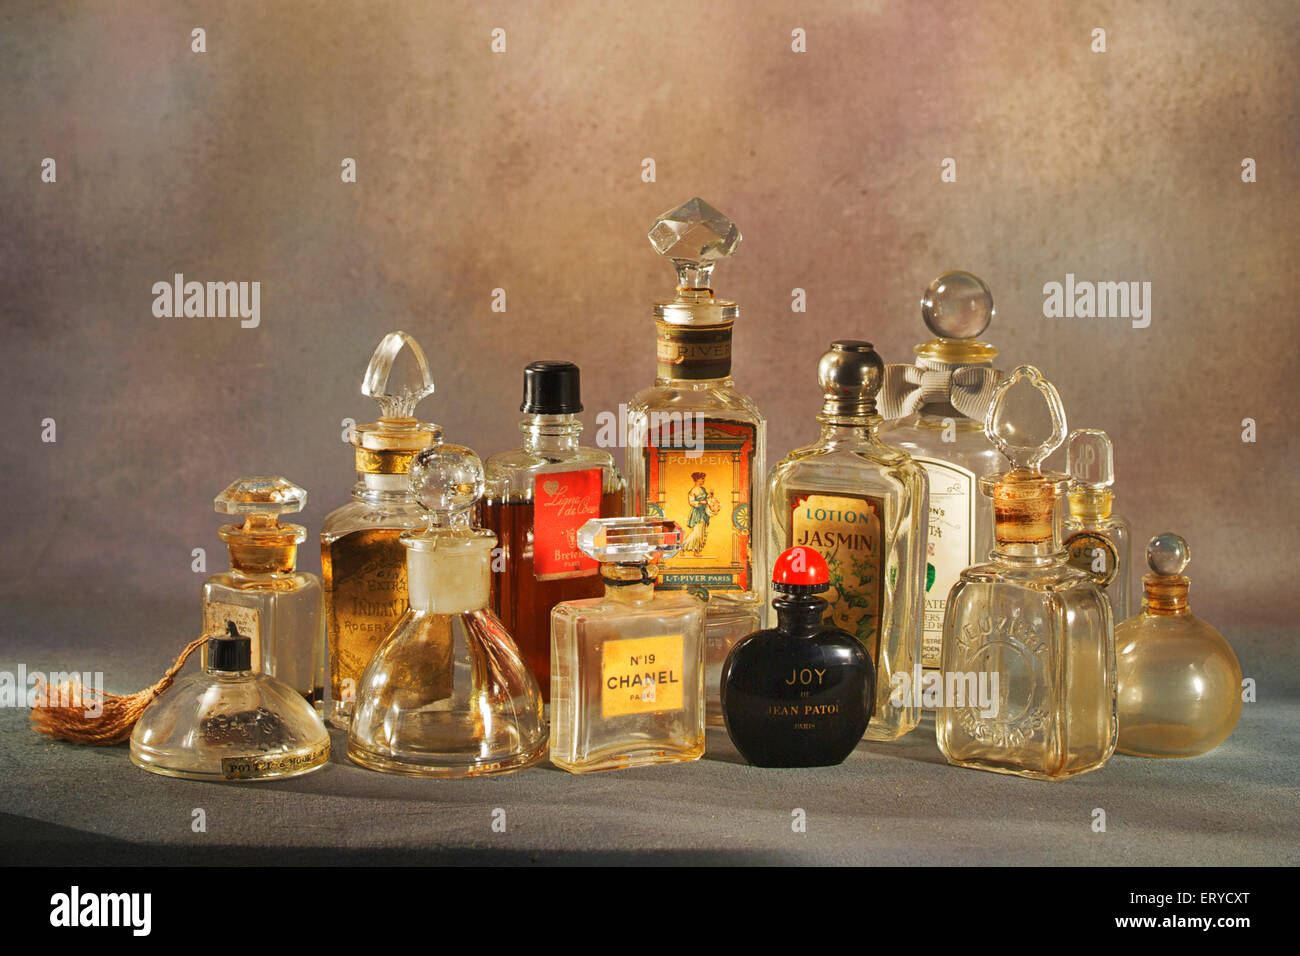 ancien parfum bouteille verre chanel joy jasmin collection collecteur Banque D'Images